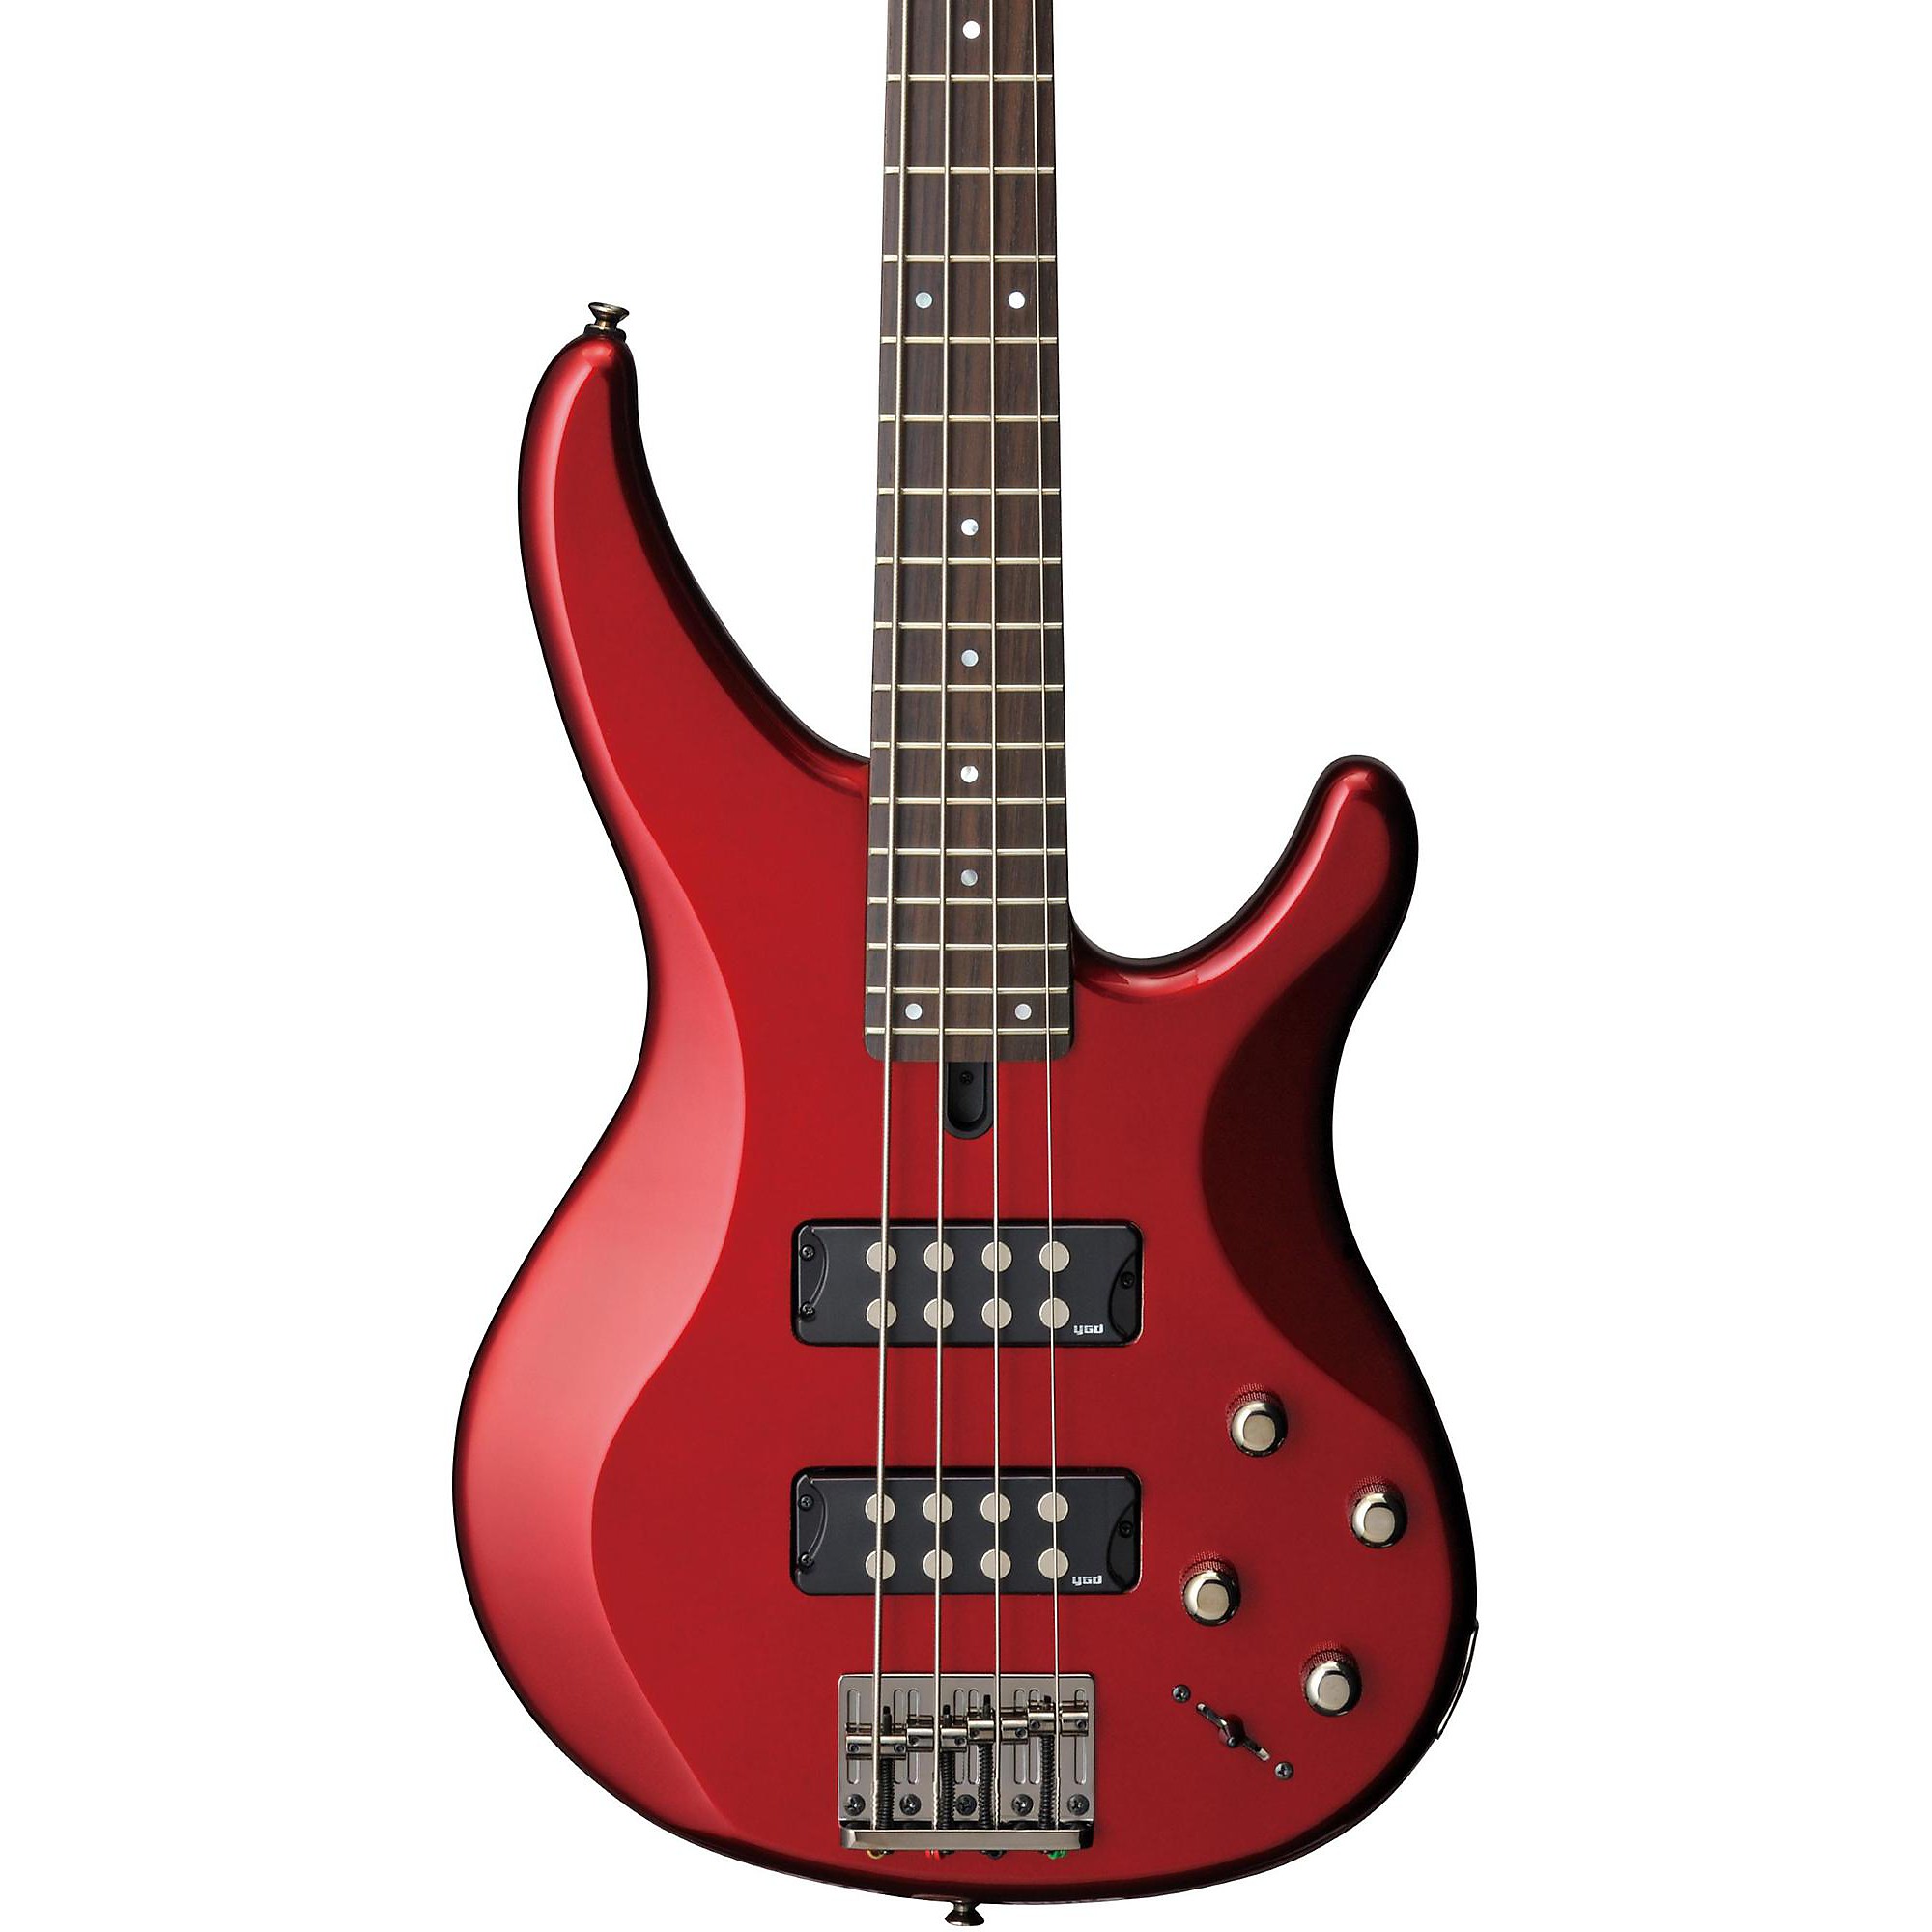 Yamaha TRBX304 4-струнная электрическая бас-гитара Candy Apple Red Палисандровая накладка